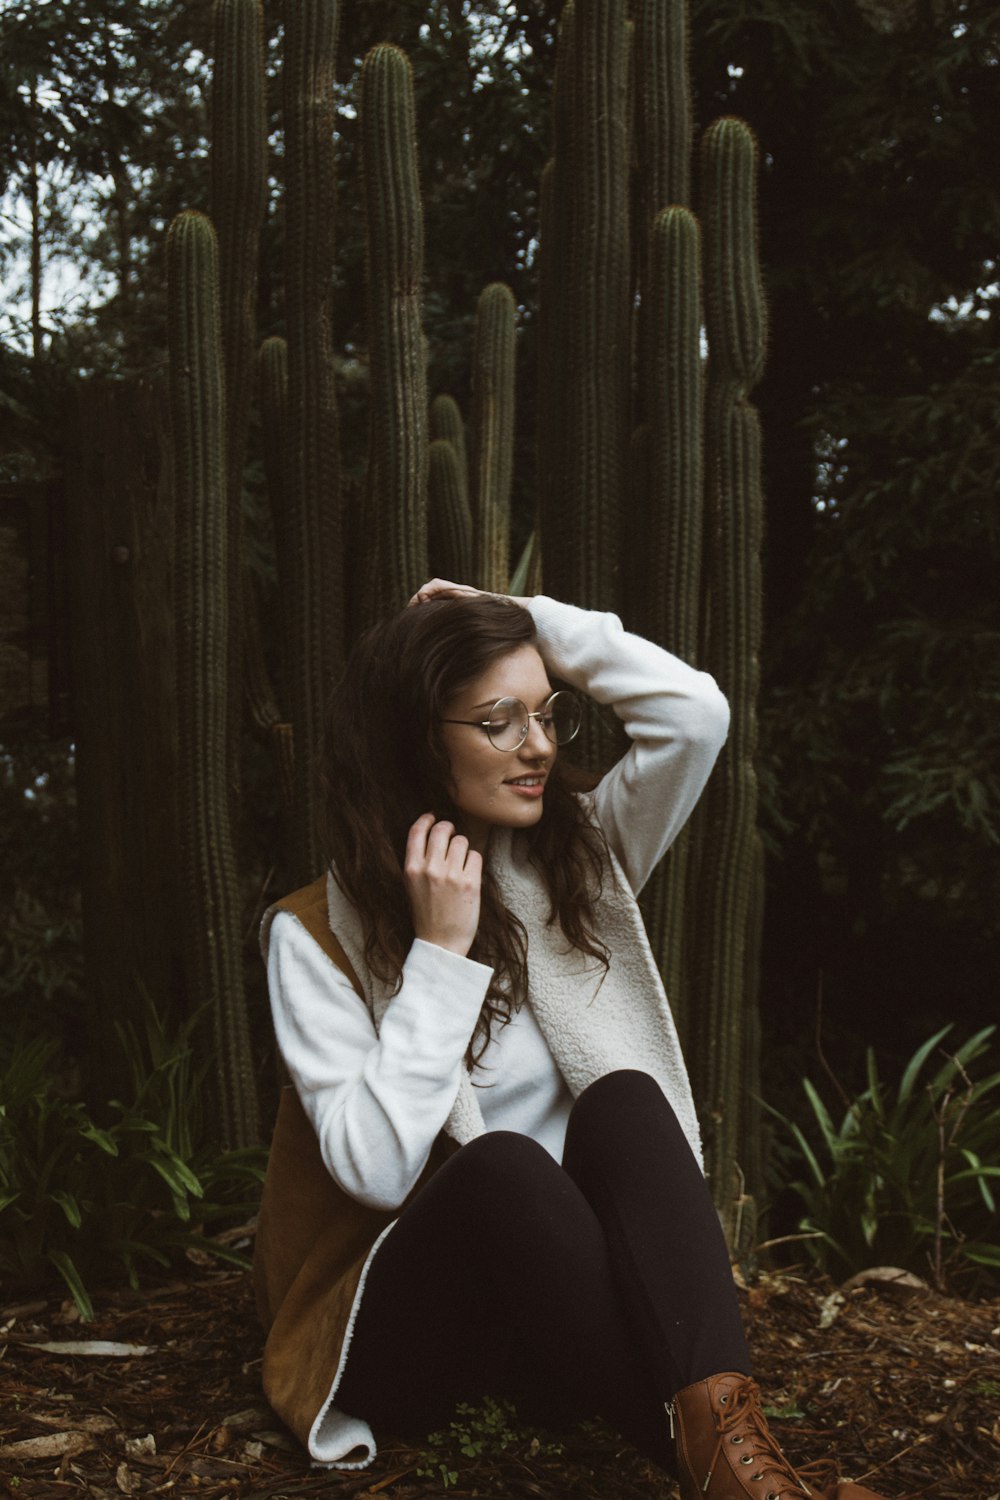 Mujer sonriente con abrigo marrón y blanco sentada junto a plantas verdes de cactus